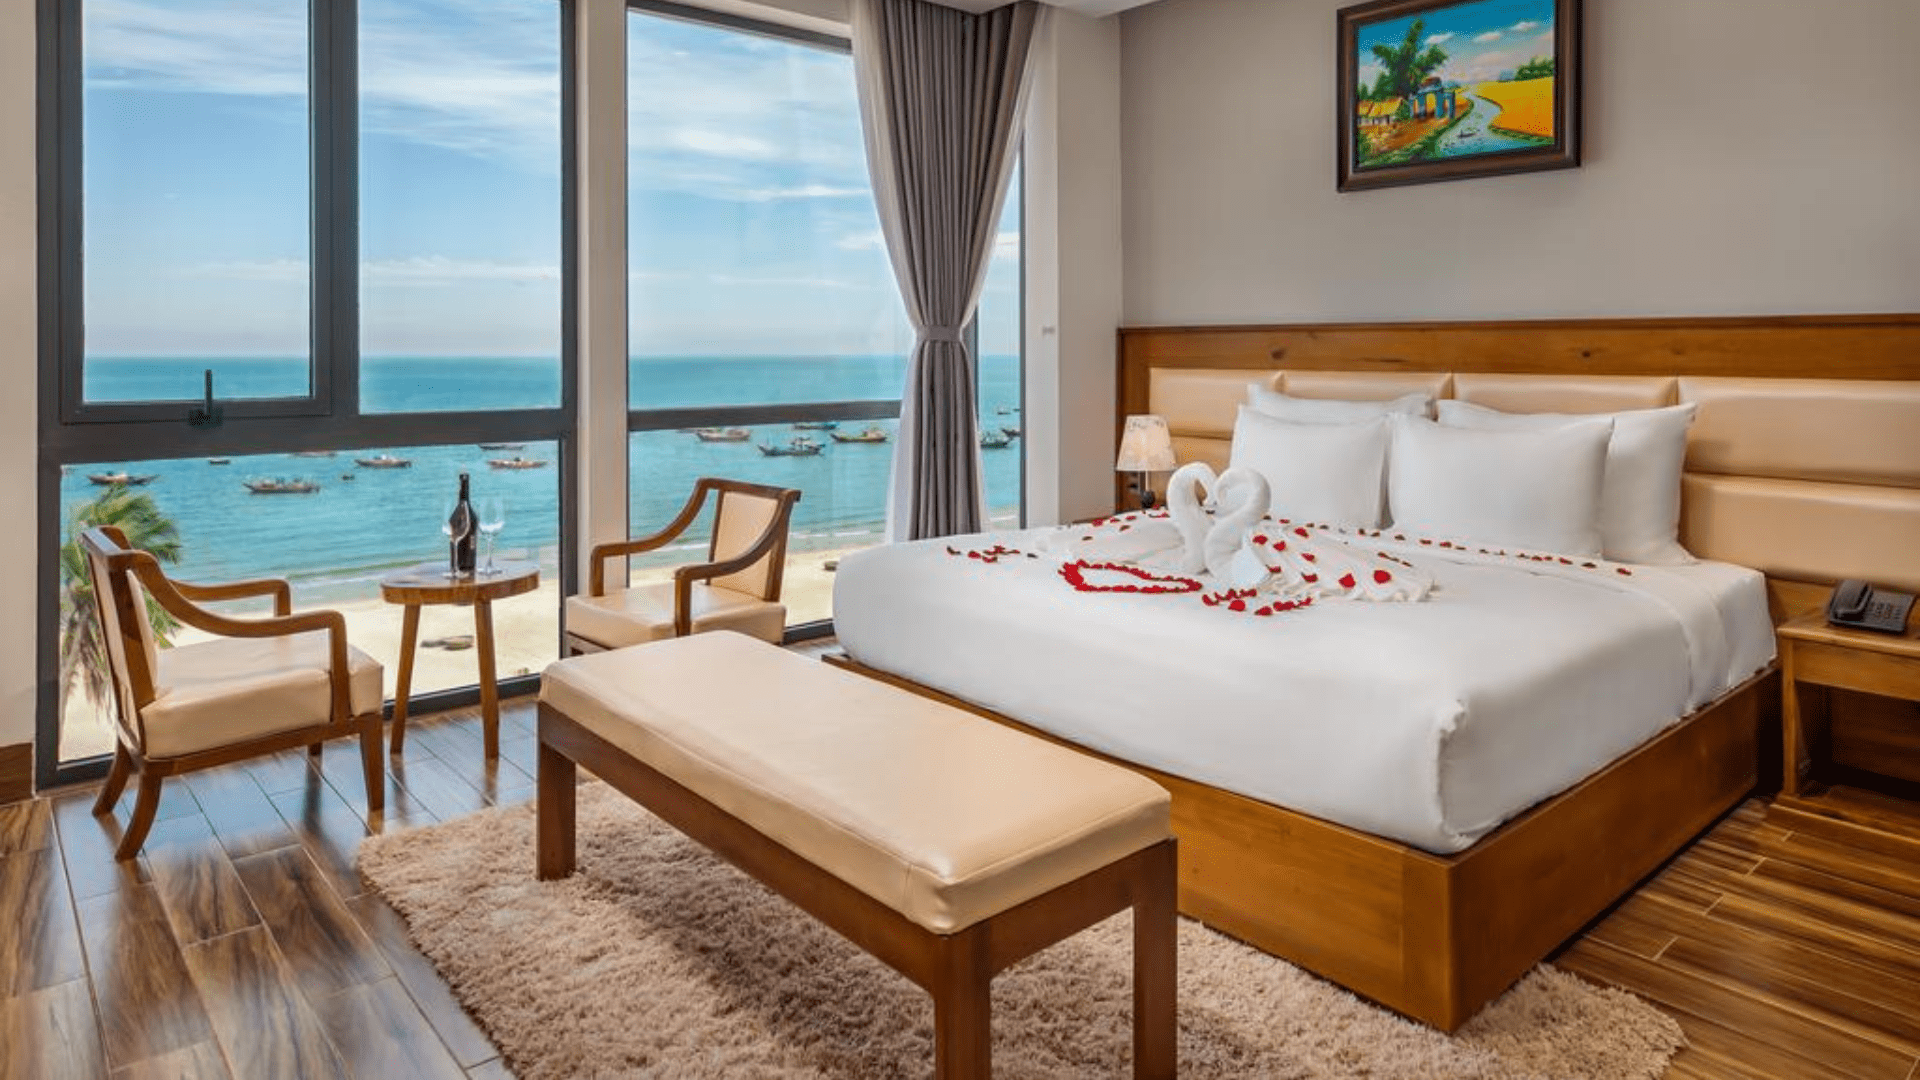 Rosamia Da Nang Hotel - Khách sạn 5 sao Đà Nẵng